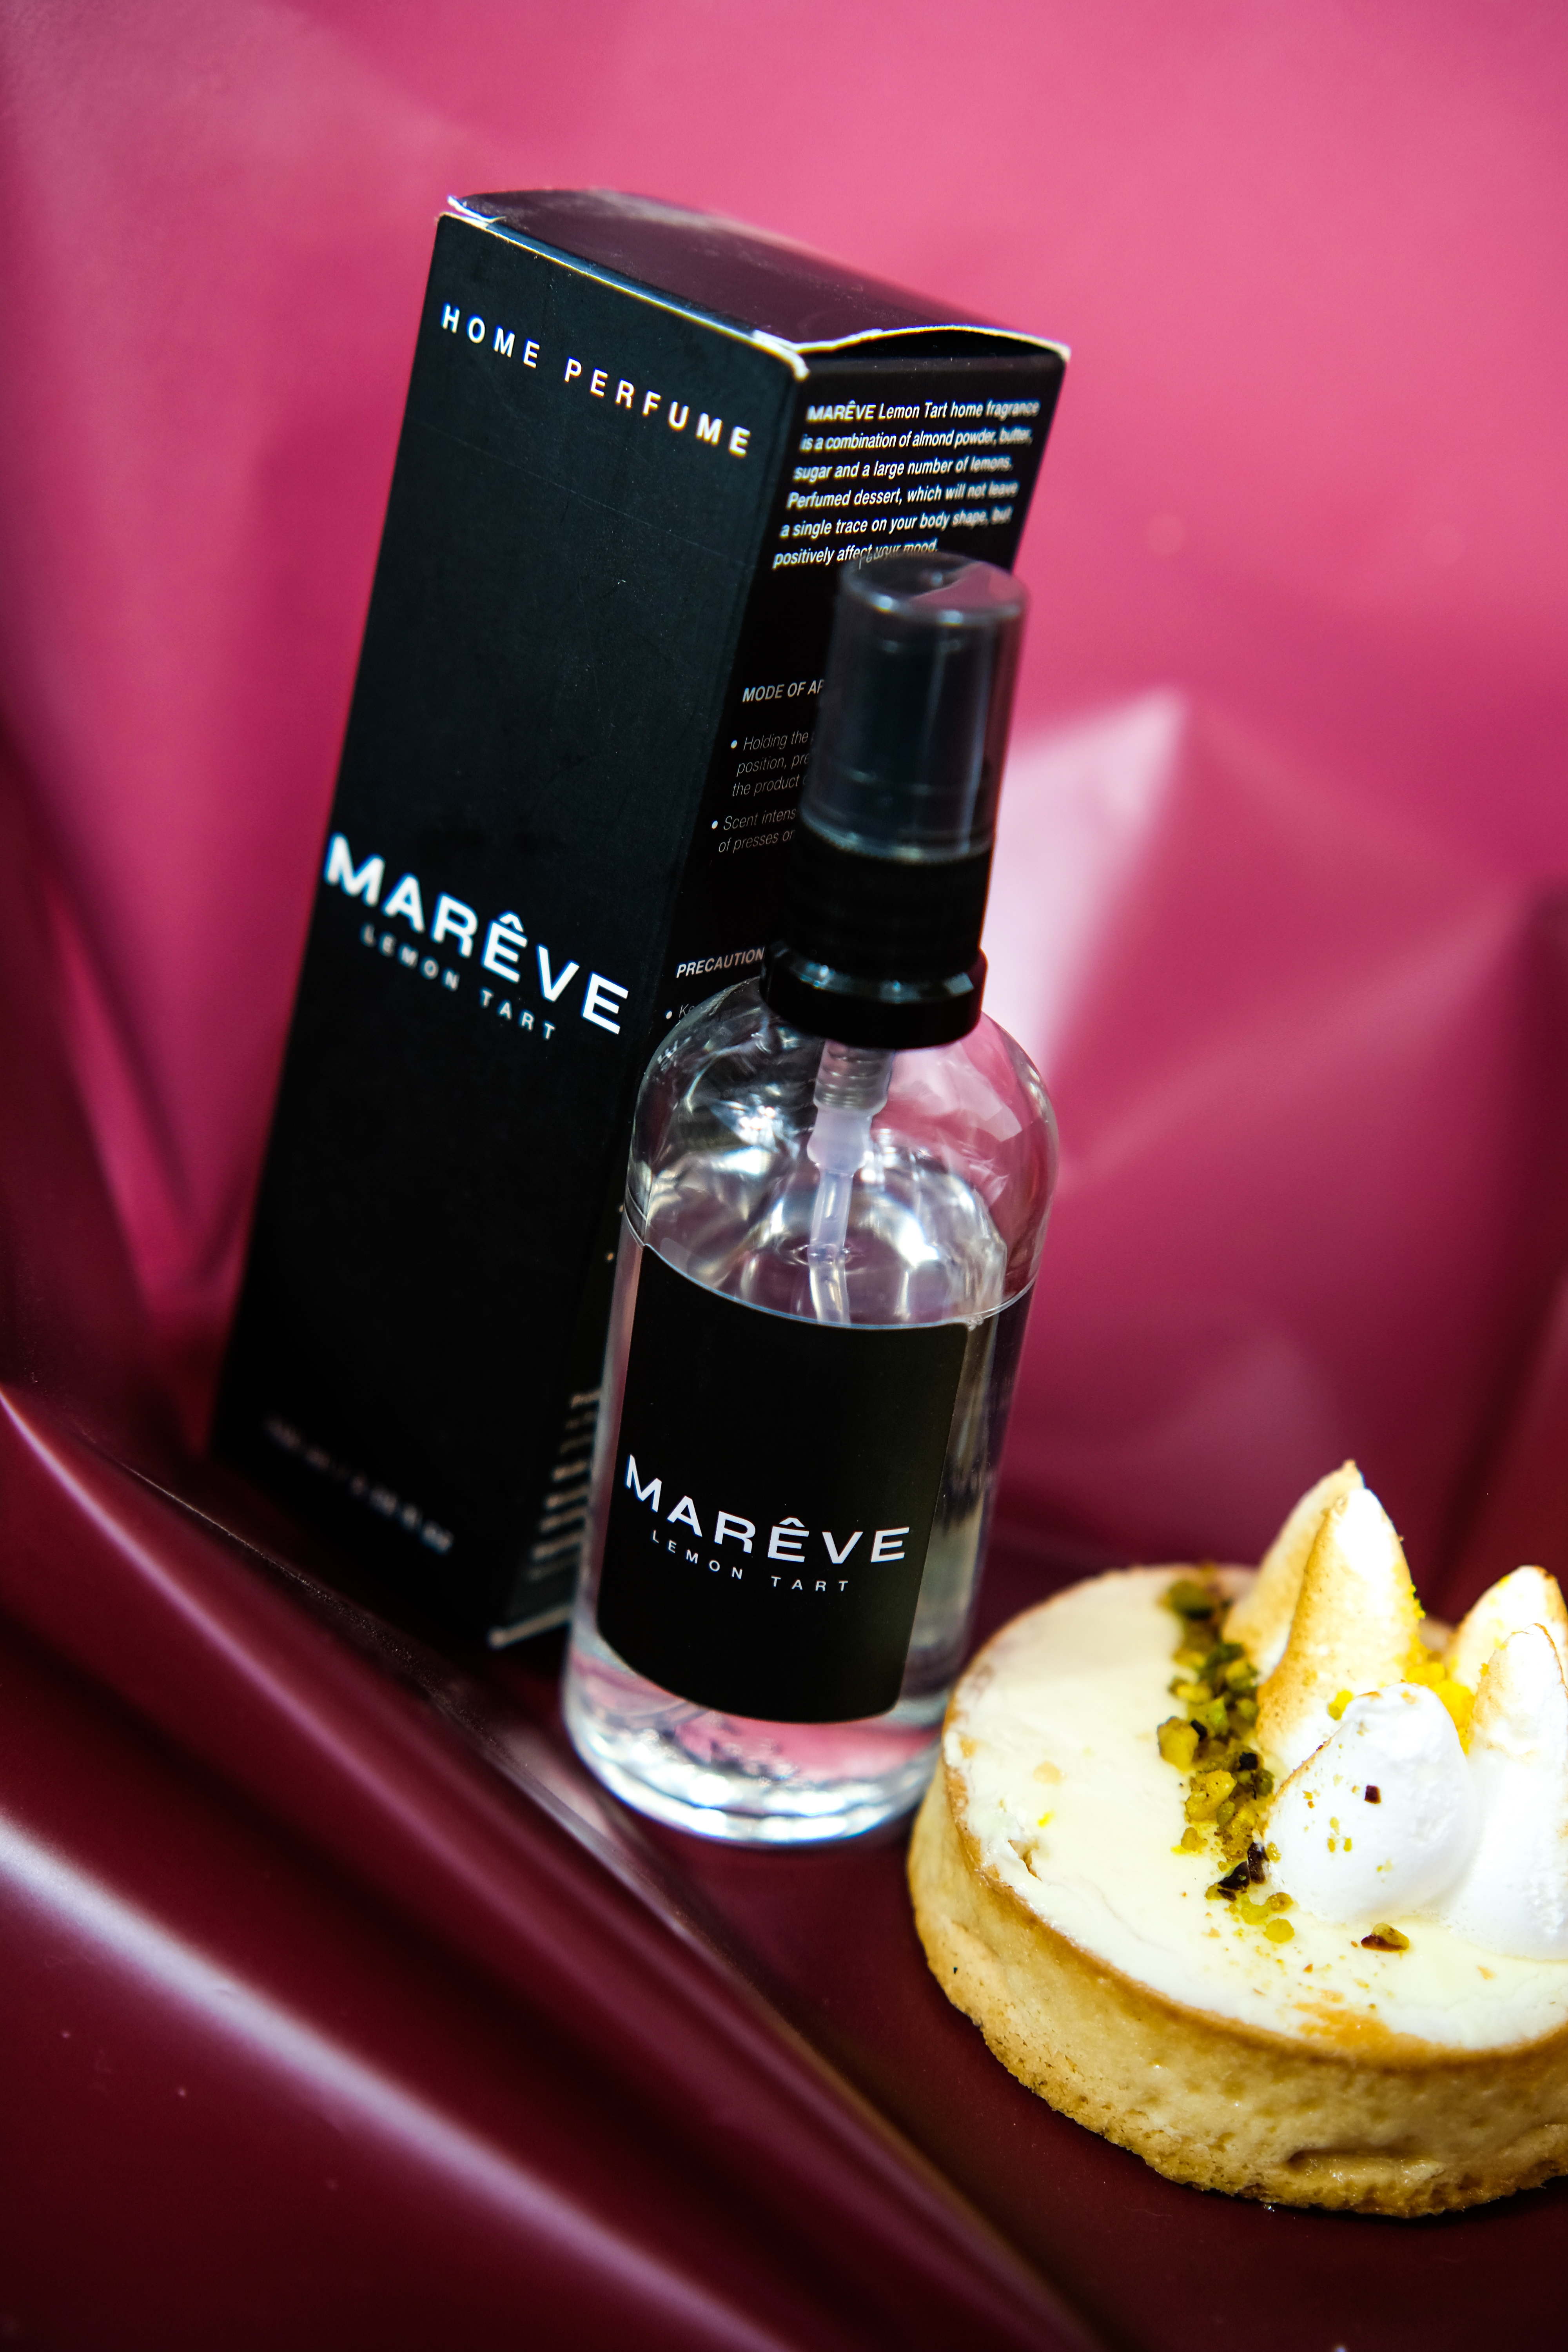 Пошук ідеального аромату для дому від бренда Mareve : Lemon Tart